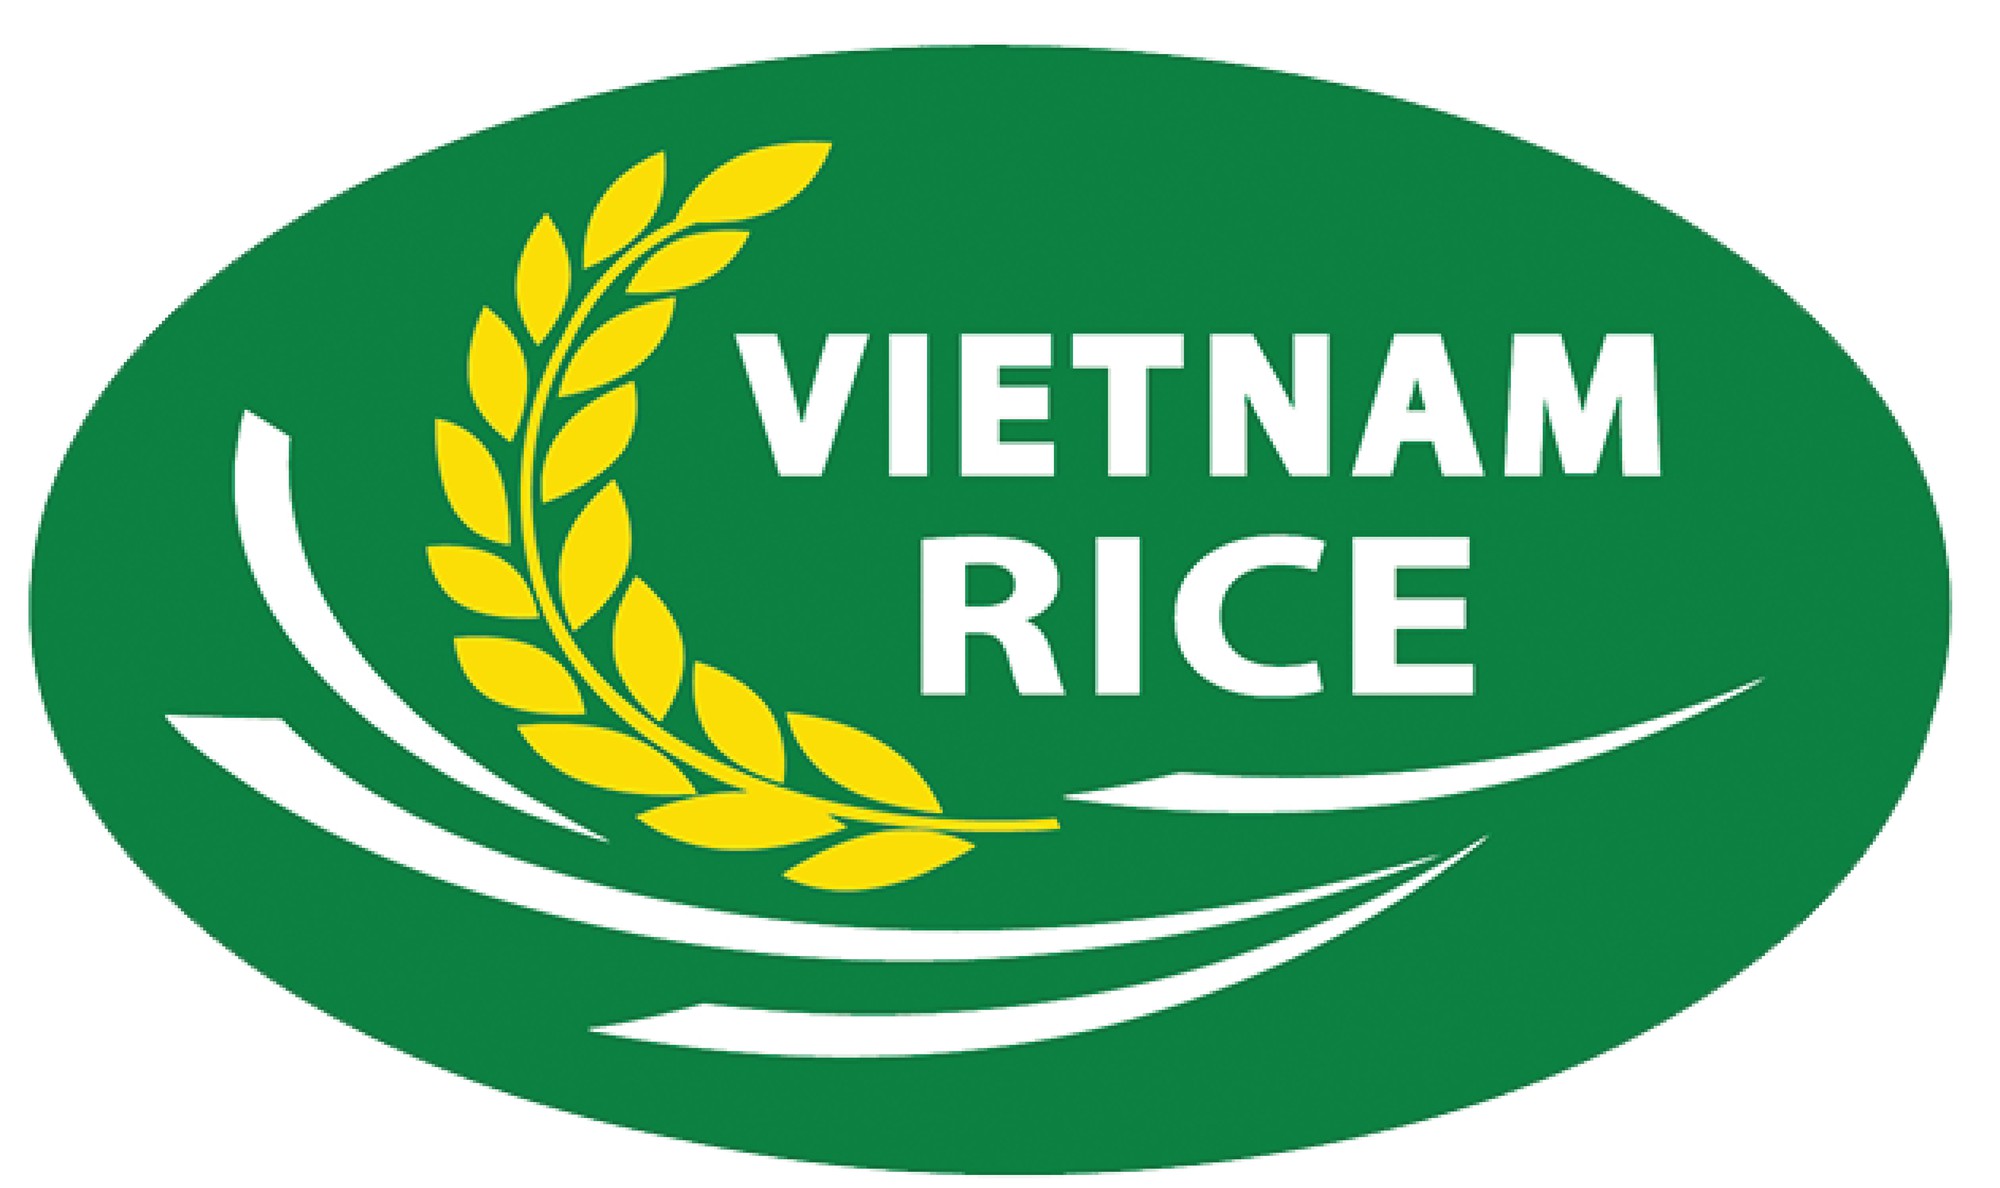 Lần đầu tiên Việt Nam có logo thương hiệu gạo Quốc gia - Báo Người ...